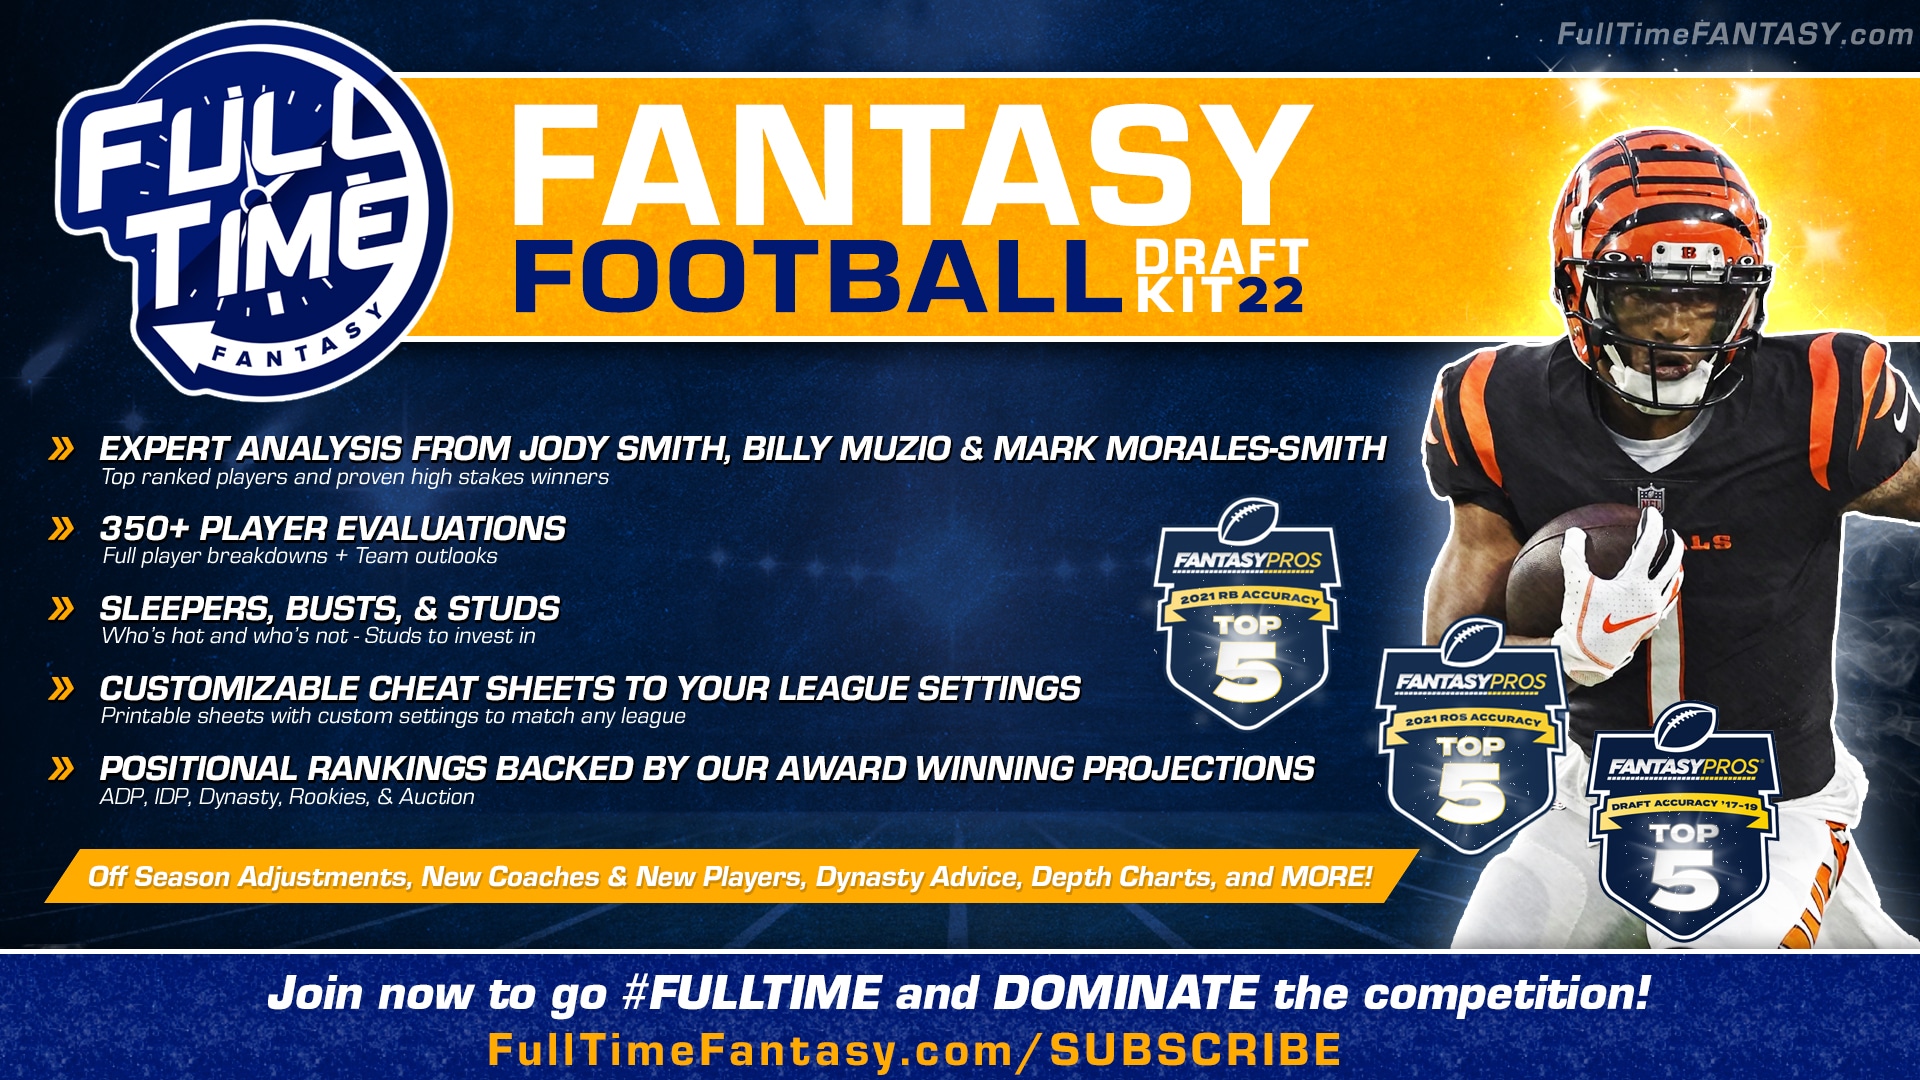 directv fantasy football draft kit